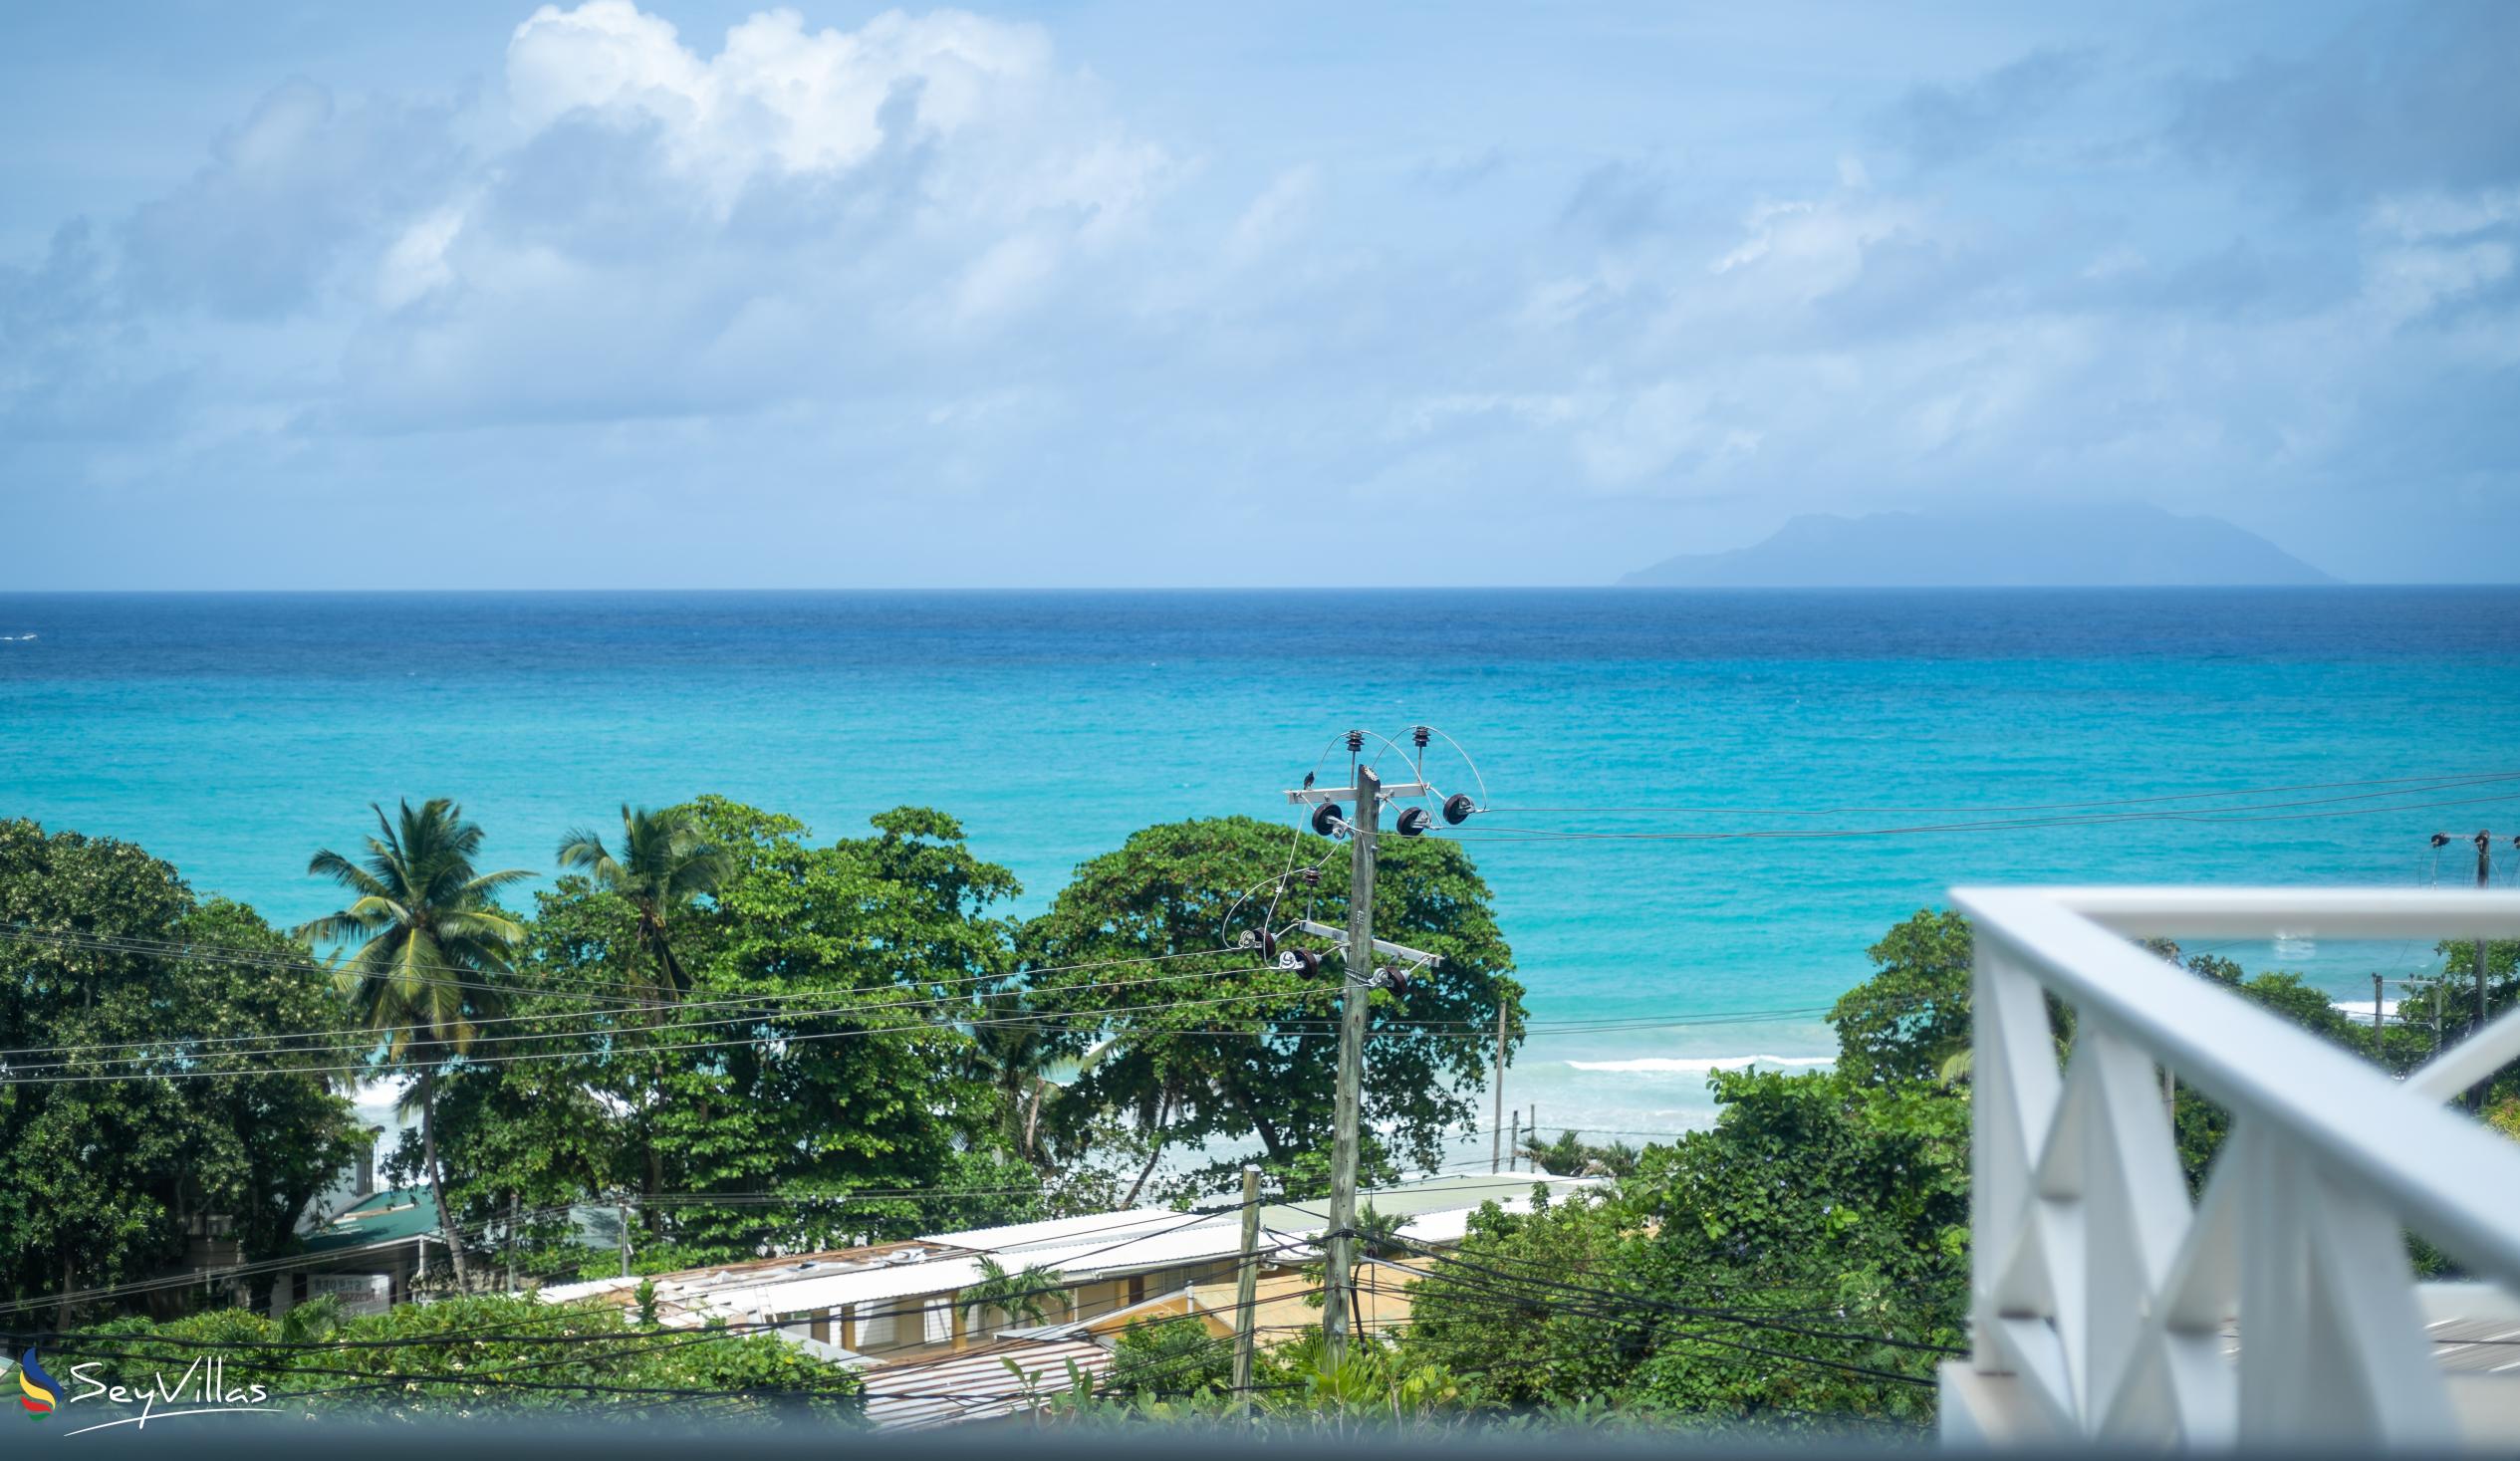 Foto 49: Villa Roscia - Camera Vista Oceano - Mahé (Seychelles)